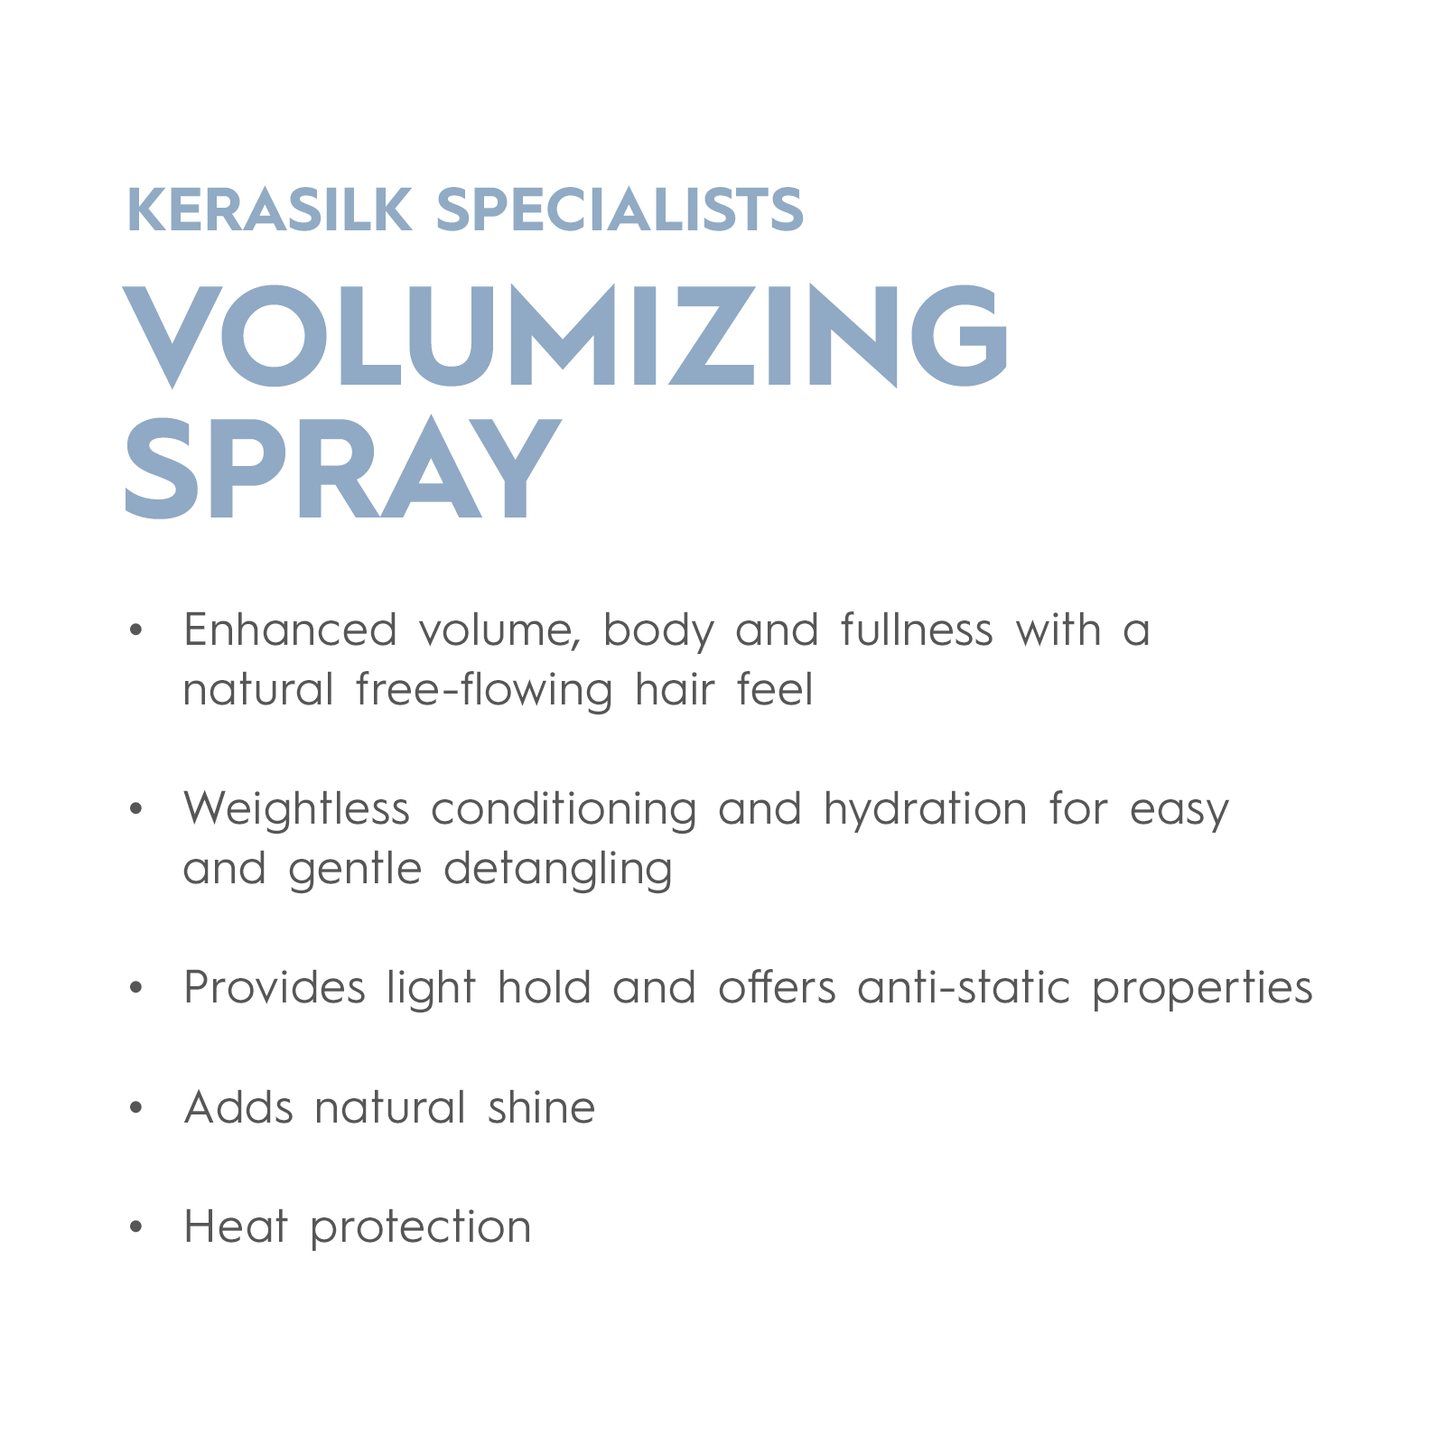 KERASILK Volumizing Spray